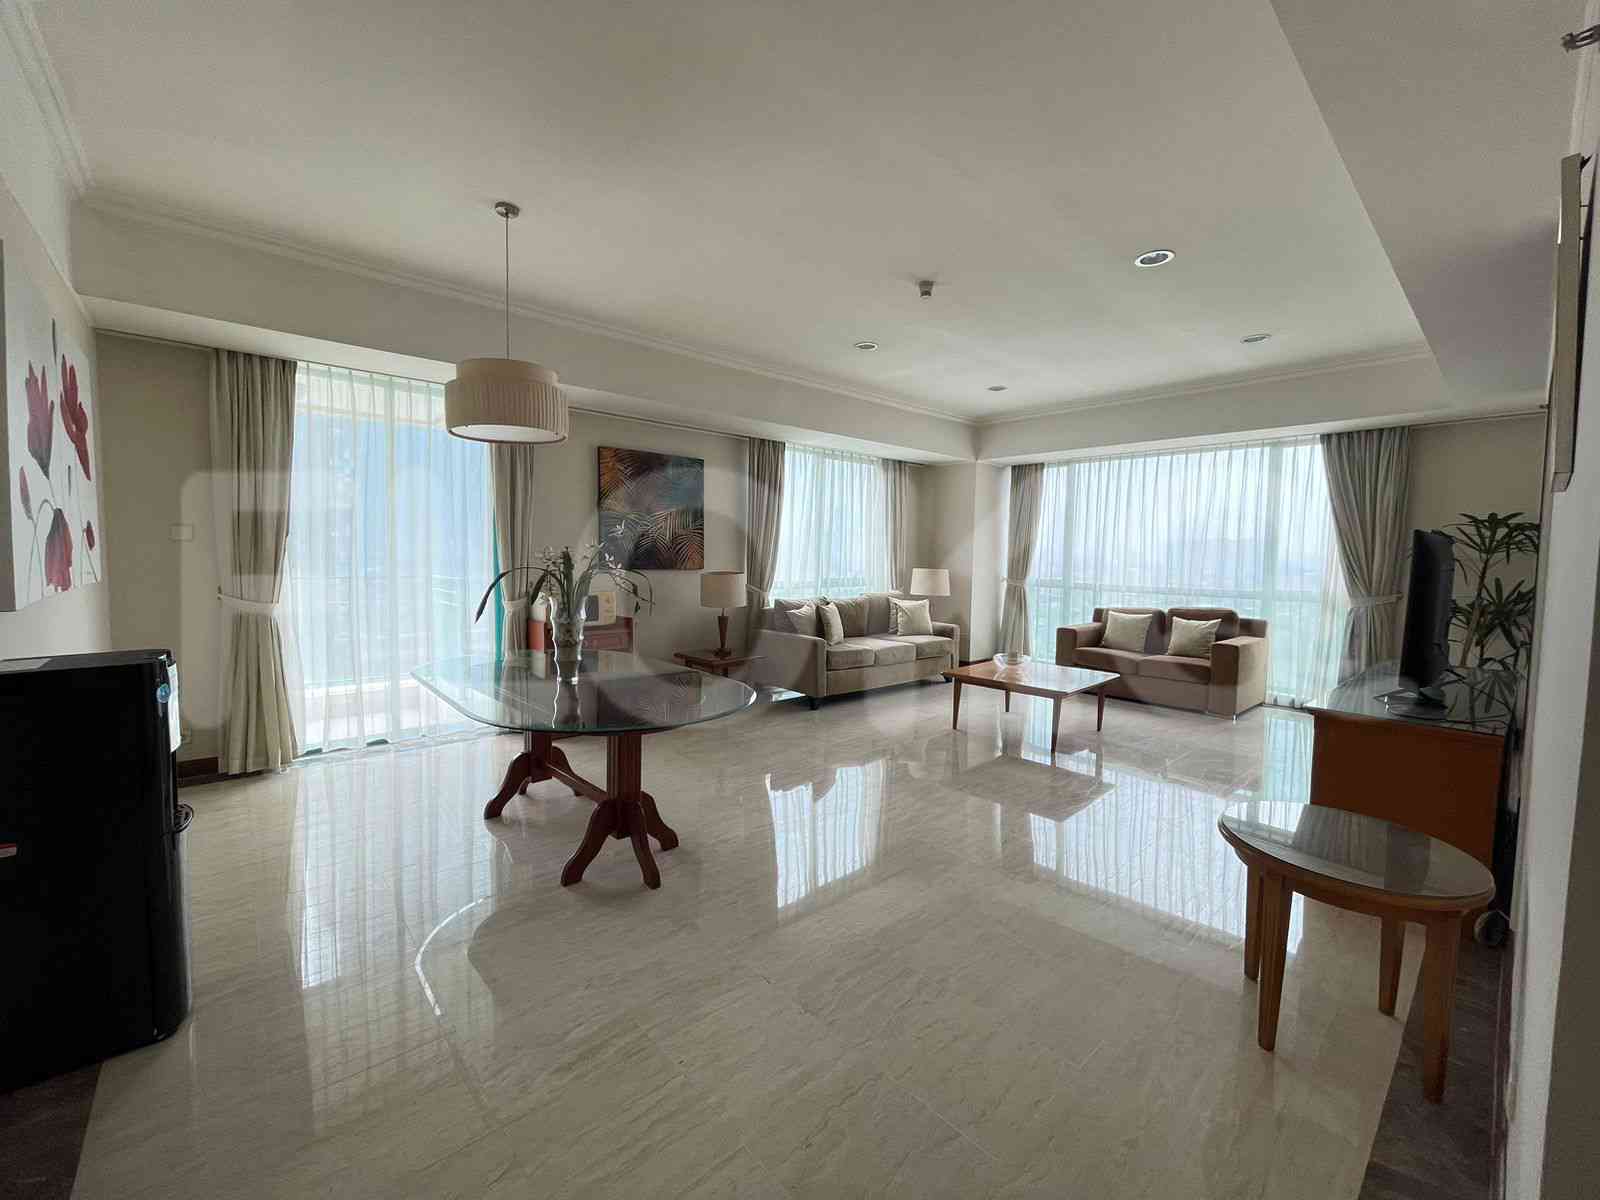 3 Bedroom on 11th Floor for Rent in Casablanca Apartment - ftea59 7